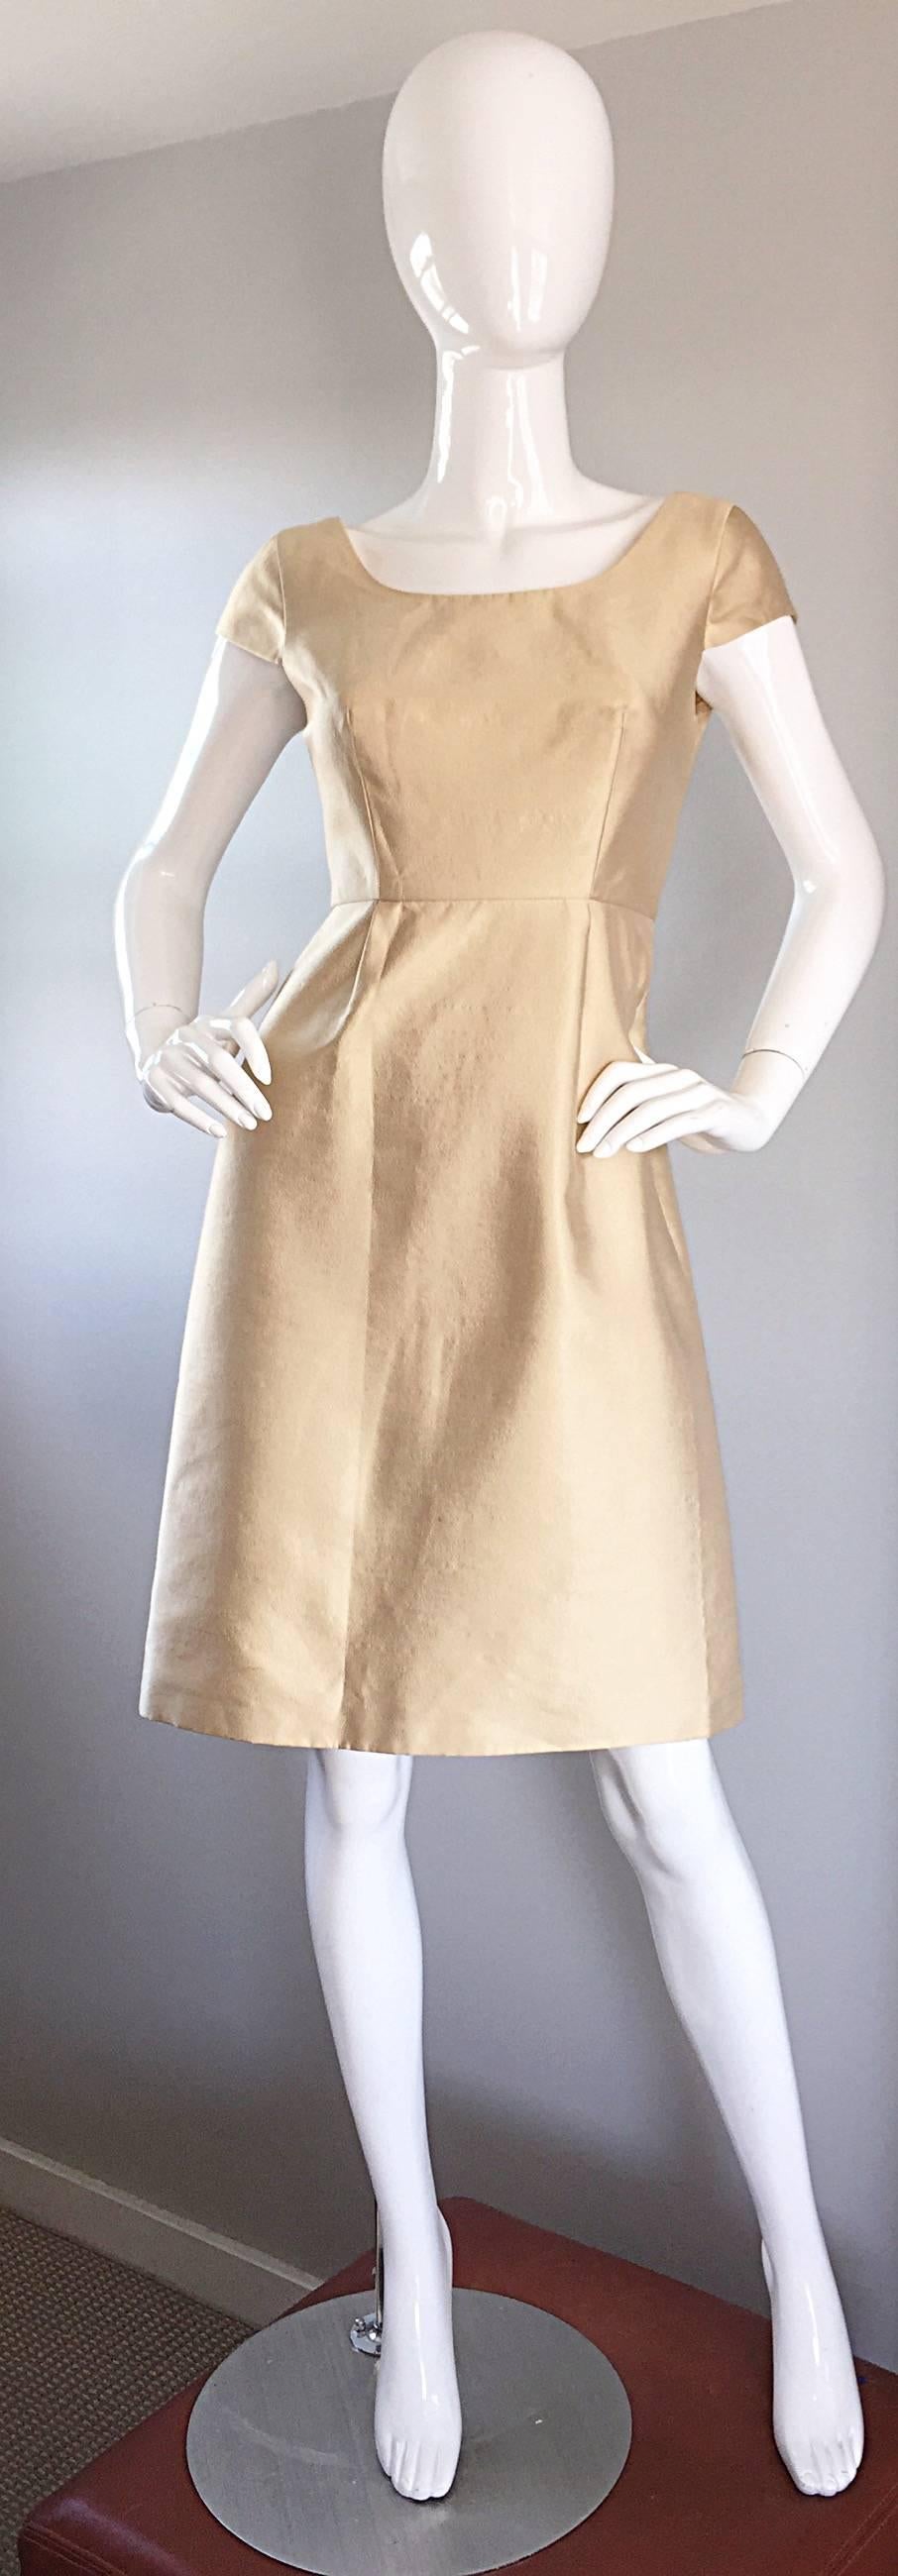 Magnifique robe en soie BADGLEY MISCHKA de couleur or clair, style années 50 ! Une couleur dorée parfaite, sur la soie la plus fine ! Style ajusté et évasé, avec une légère ligne en A. Manches courtes et dos échancré. Une coupe si flatteuse, qui